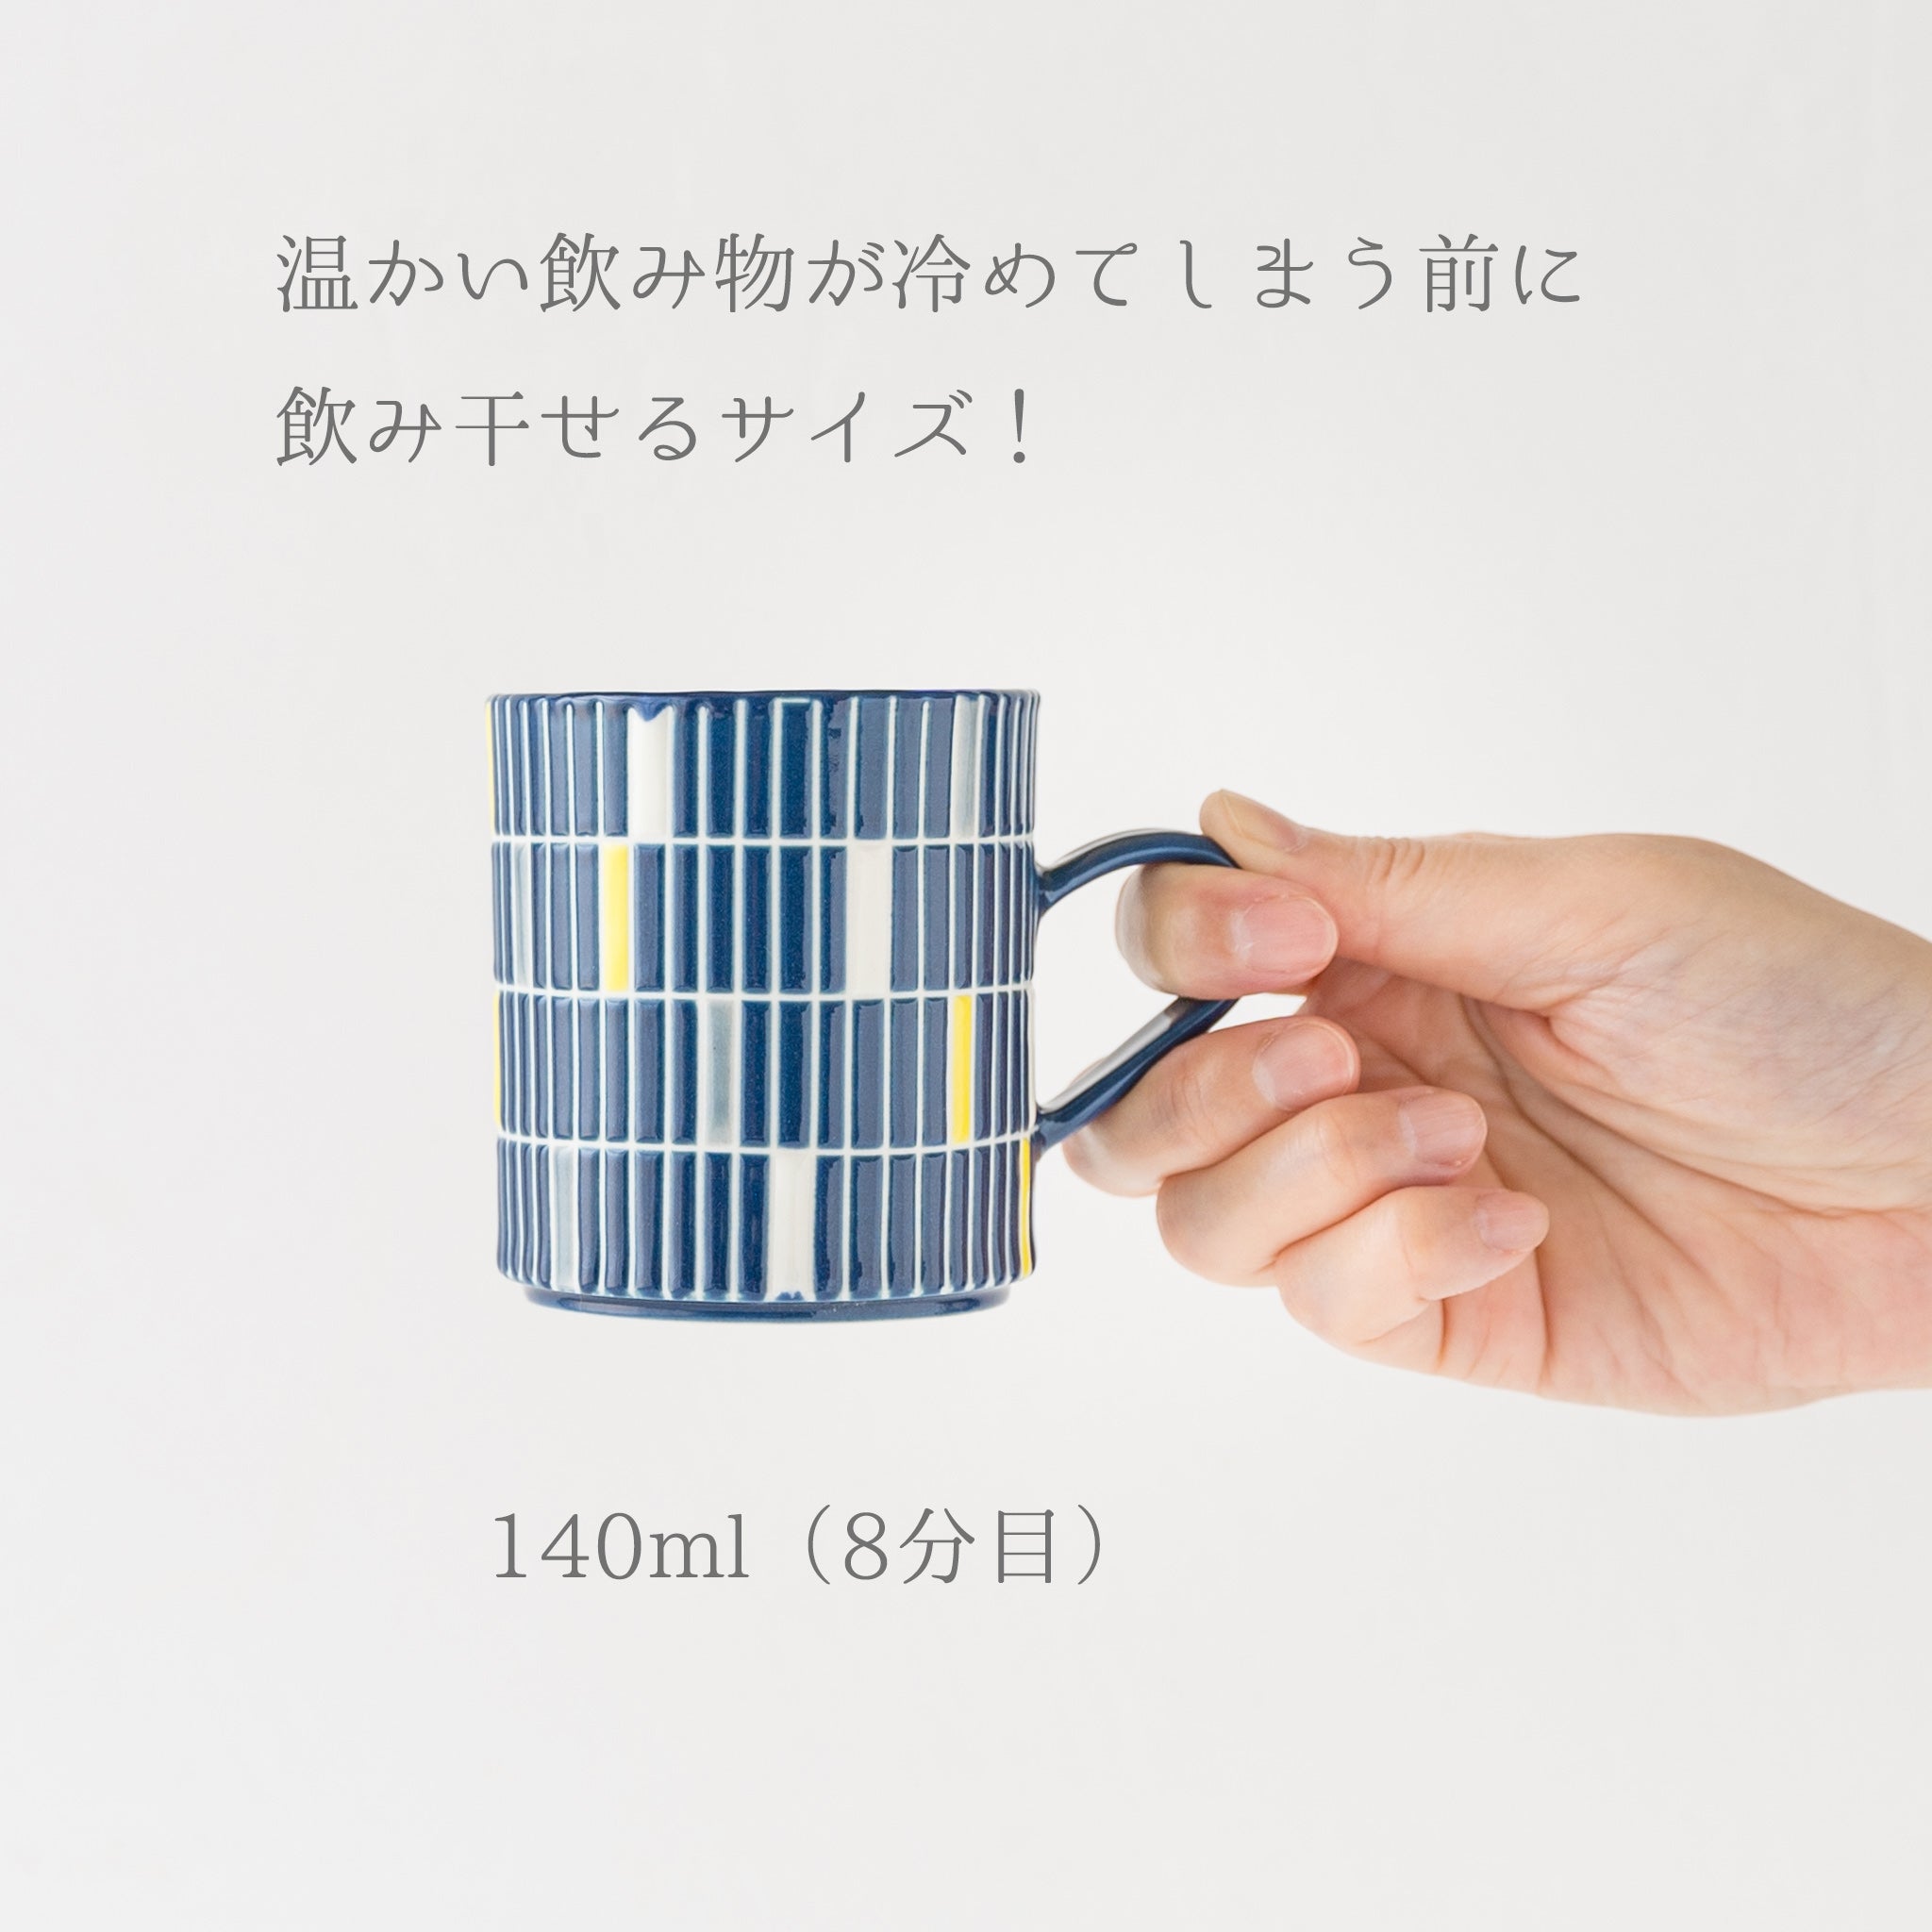 Small and easy-to-use mini mug by Yukari Nakagawa